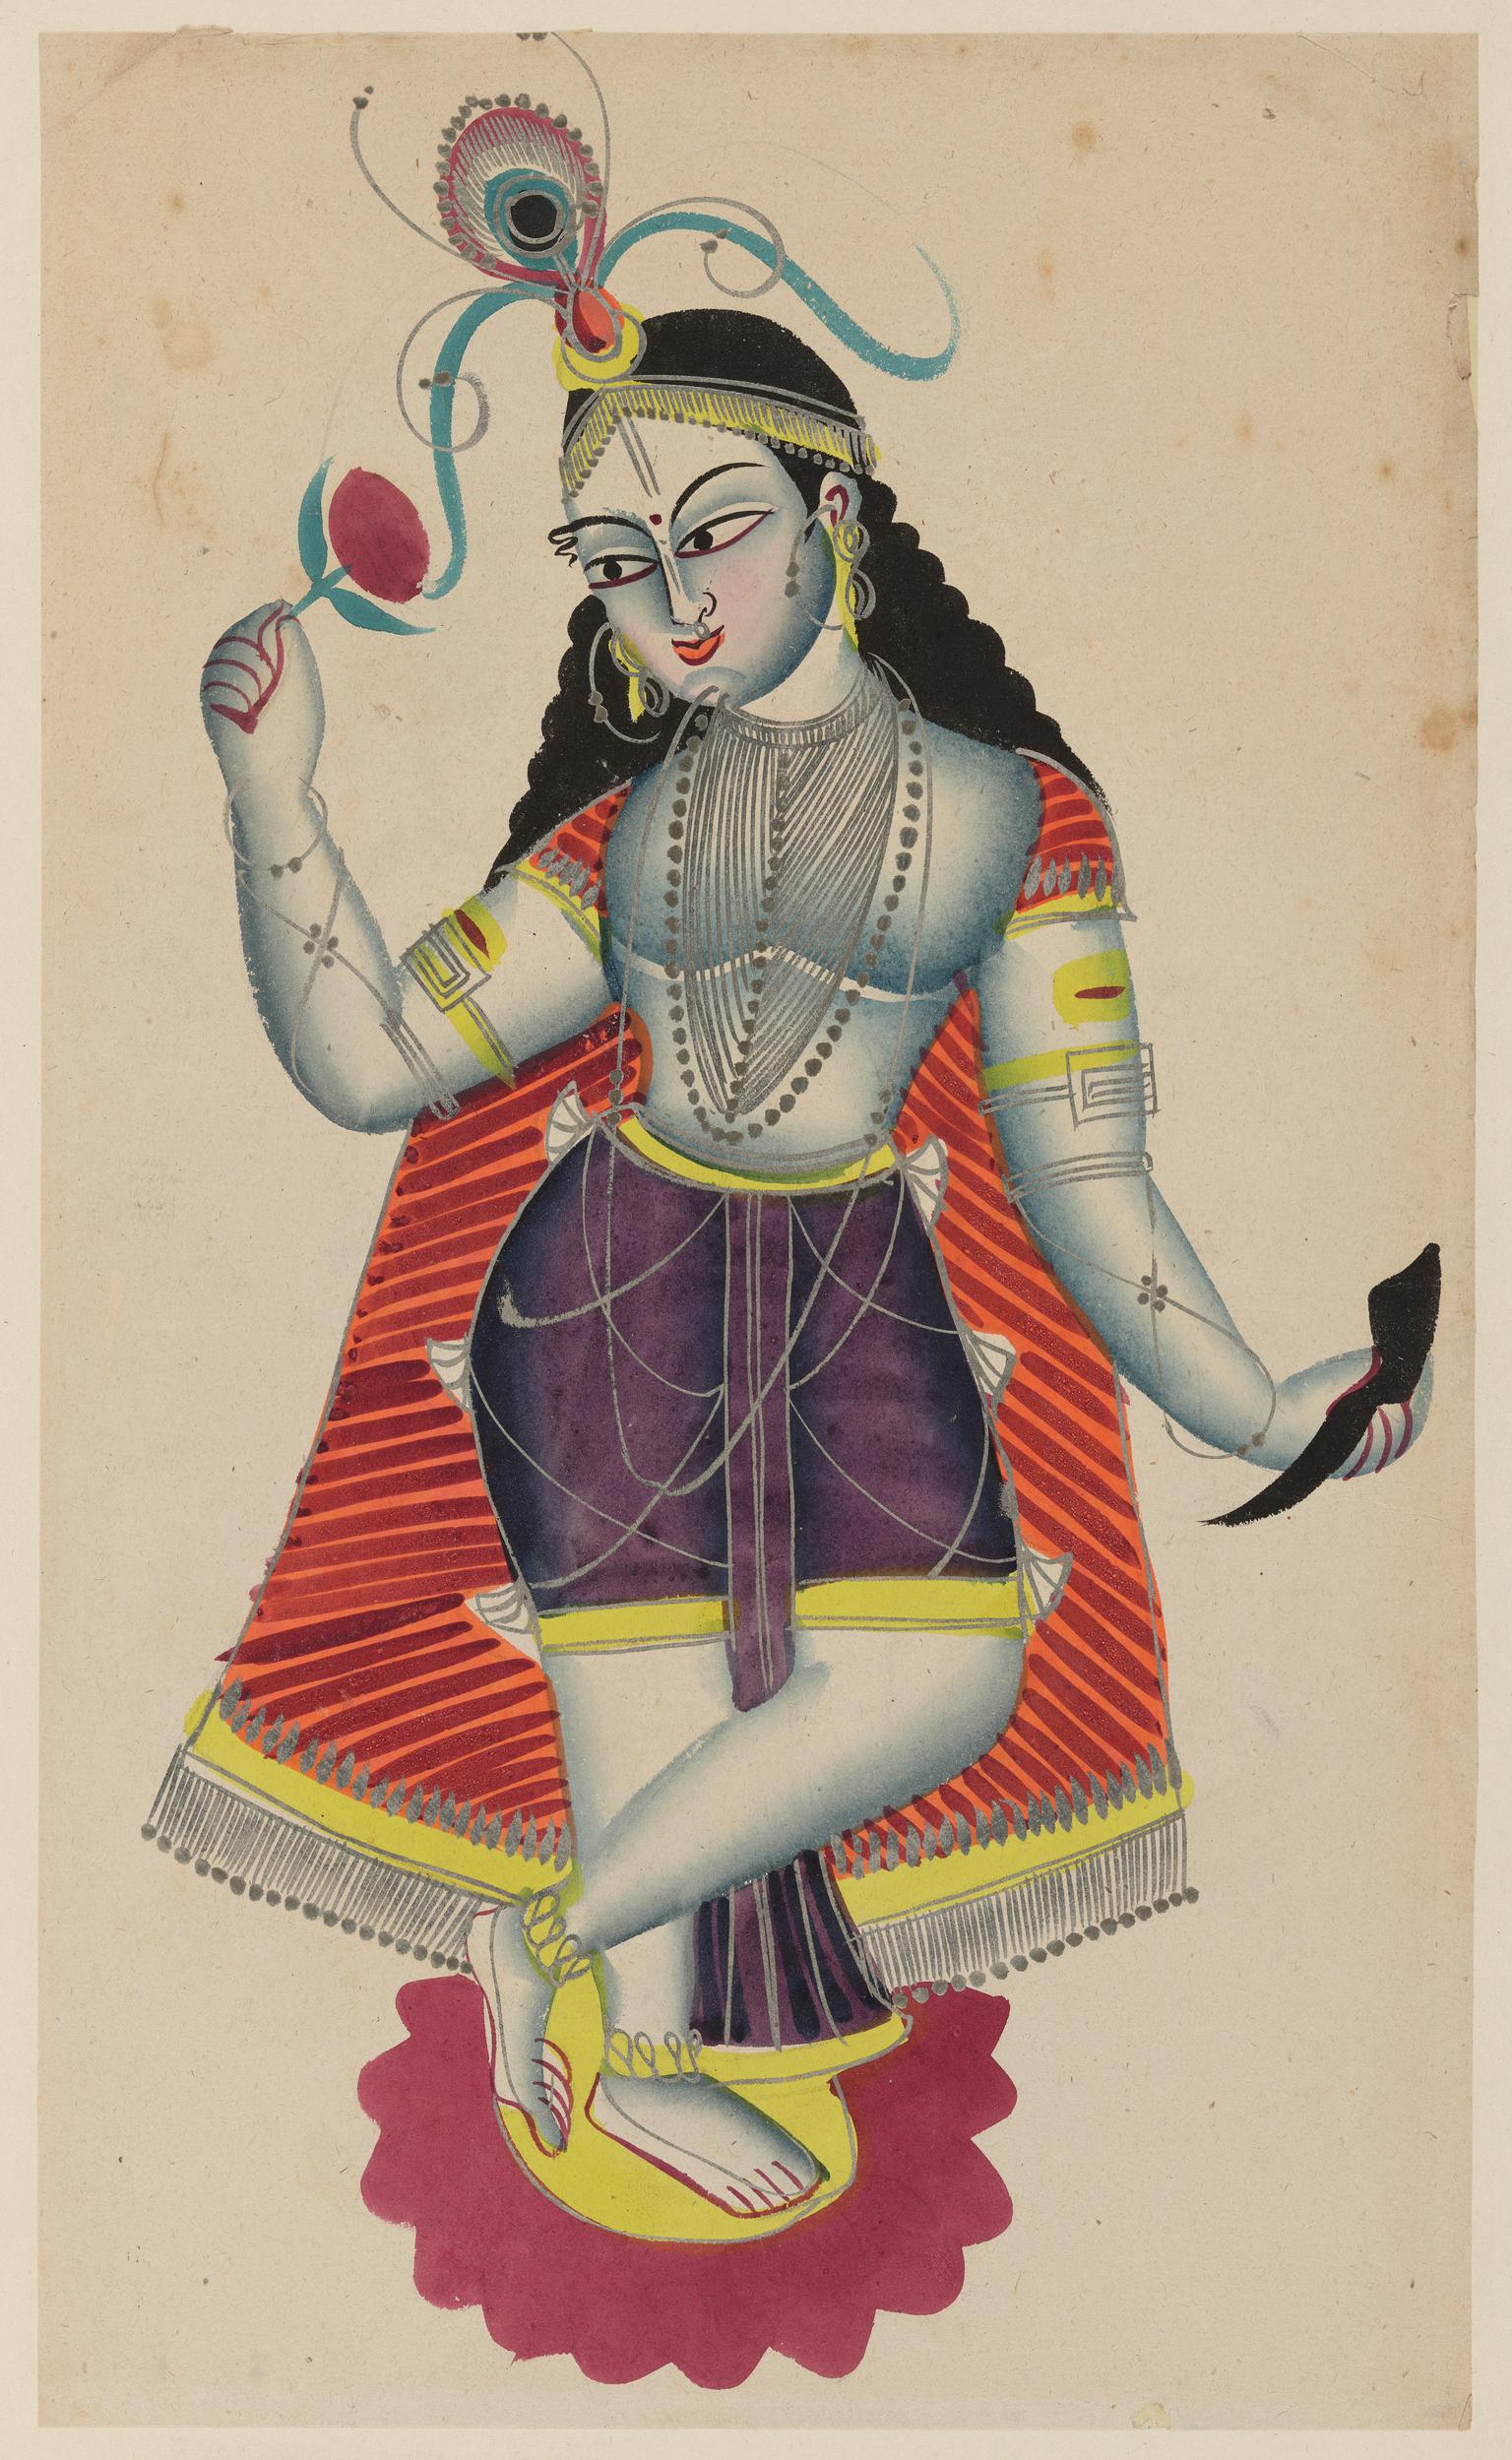 Balaram (brother of Krishna)